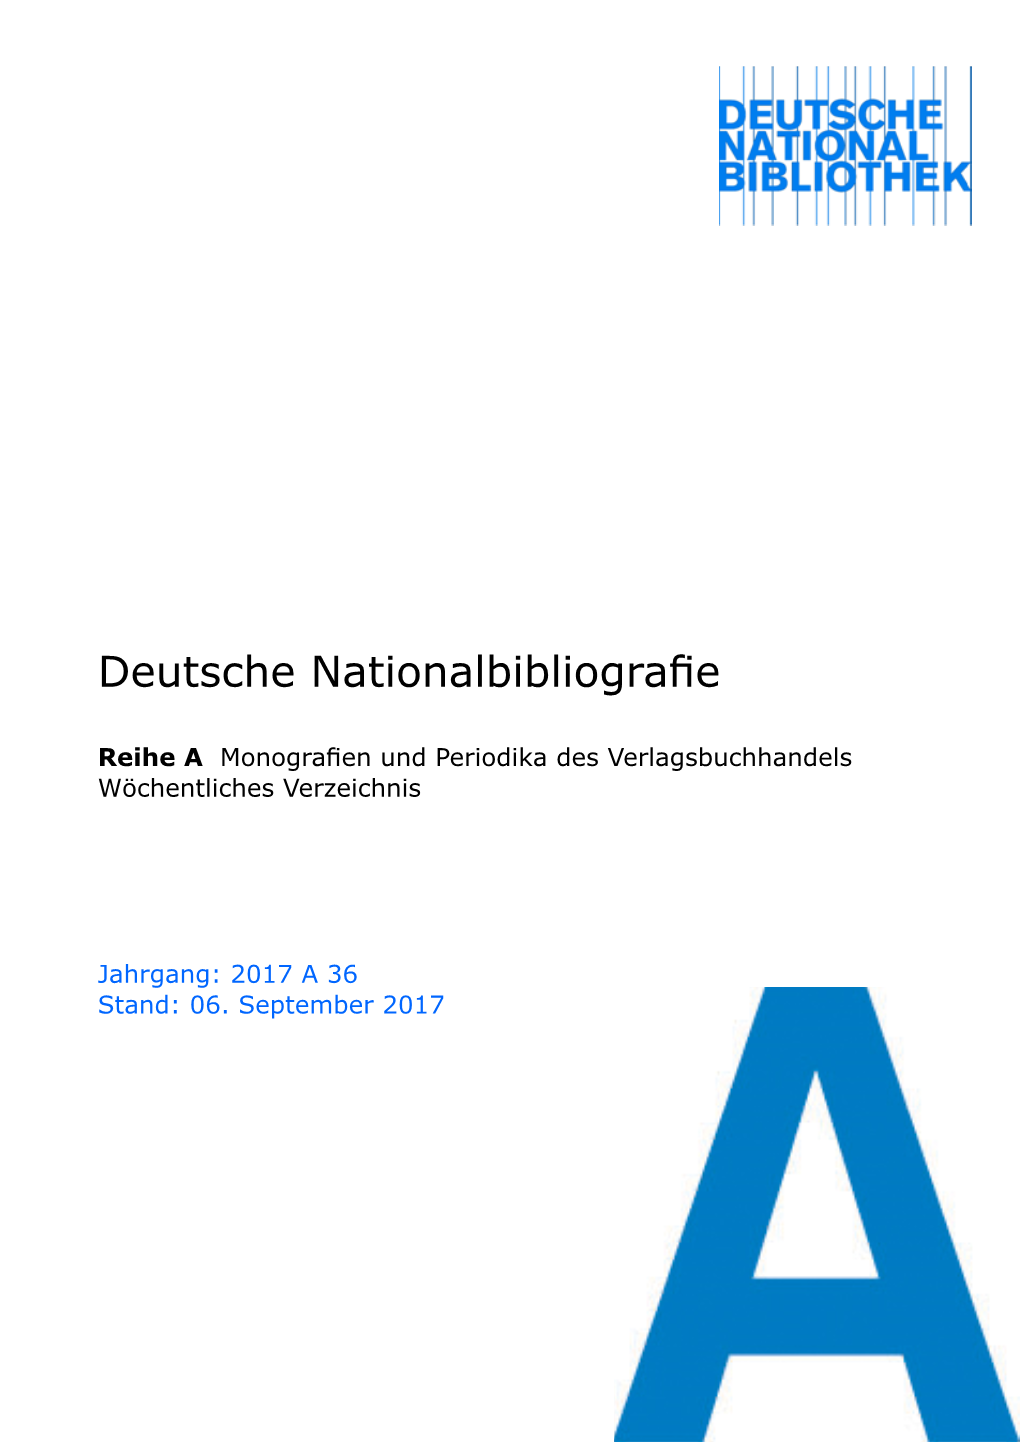 Deutsche Nationalbibliografie 2017 a 36